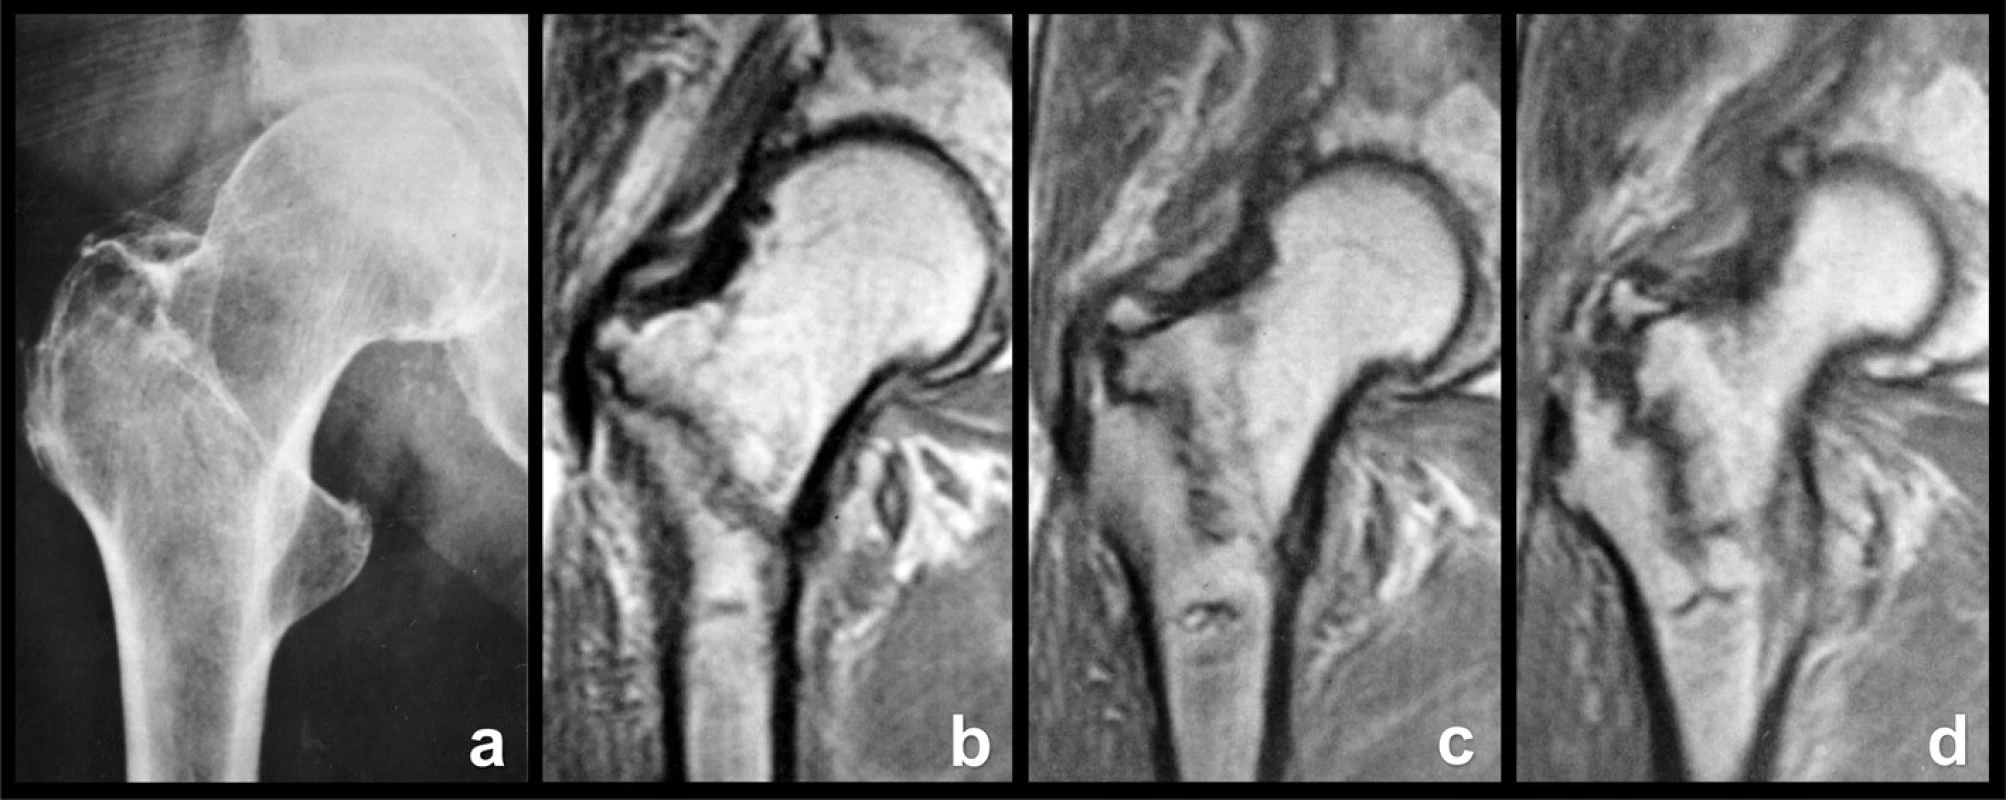 Okultní pertrochanterická zlomenina: a – rtg snímek, lomná linie není patrná; b – frontální MR řez ventrální částí proximálního femuru, lomná linie dosahuje až k malému trochanteru; c – frontální MR řez střední částí proximálního femuru, inkompletní lomná linie probíhá vertikálněji; d – frontální MR řez dorzální částí proximálního femuru, je patrné odlomení apexu velkého trochanteru i komprese spongiózy podél lomné linie. 
Fig. 10: Occult pertrochanteric fracture: a – radiograph, fracture line cannot be seen; b – frontal MRI section through the anterior part of the proximal femur, the fracture line extends as far as the lesser trochanter; c – frontal MRI scan through the middle part of the proximal femur, incomplete fracture line passes more vertically; d – frontal MRI scan through the posterior part of the proximal femur, both separation of the apex of the greater trochanter and compression of the cancellous bone along the fracture line can be seen.